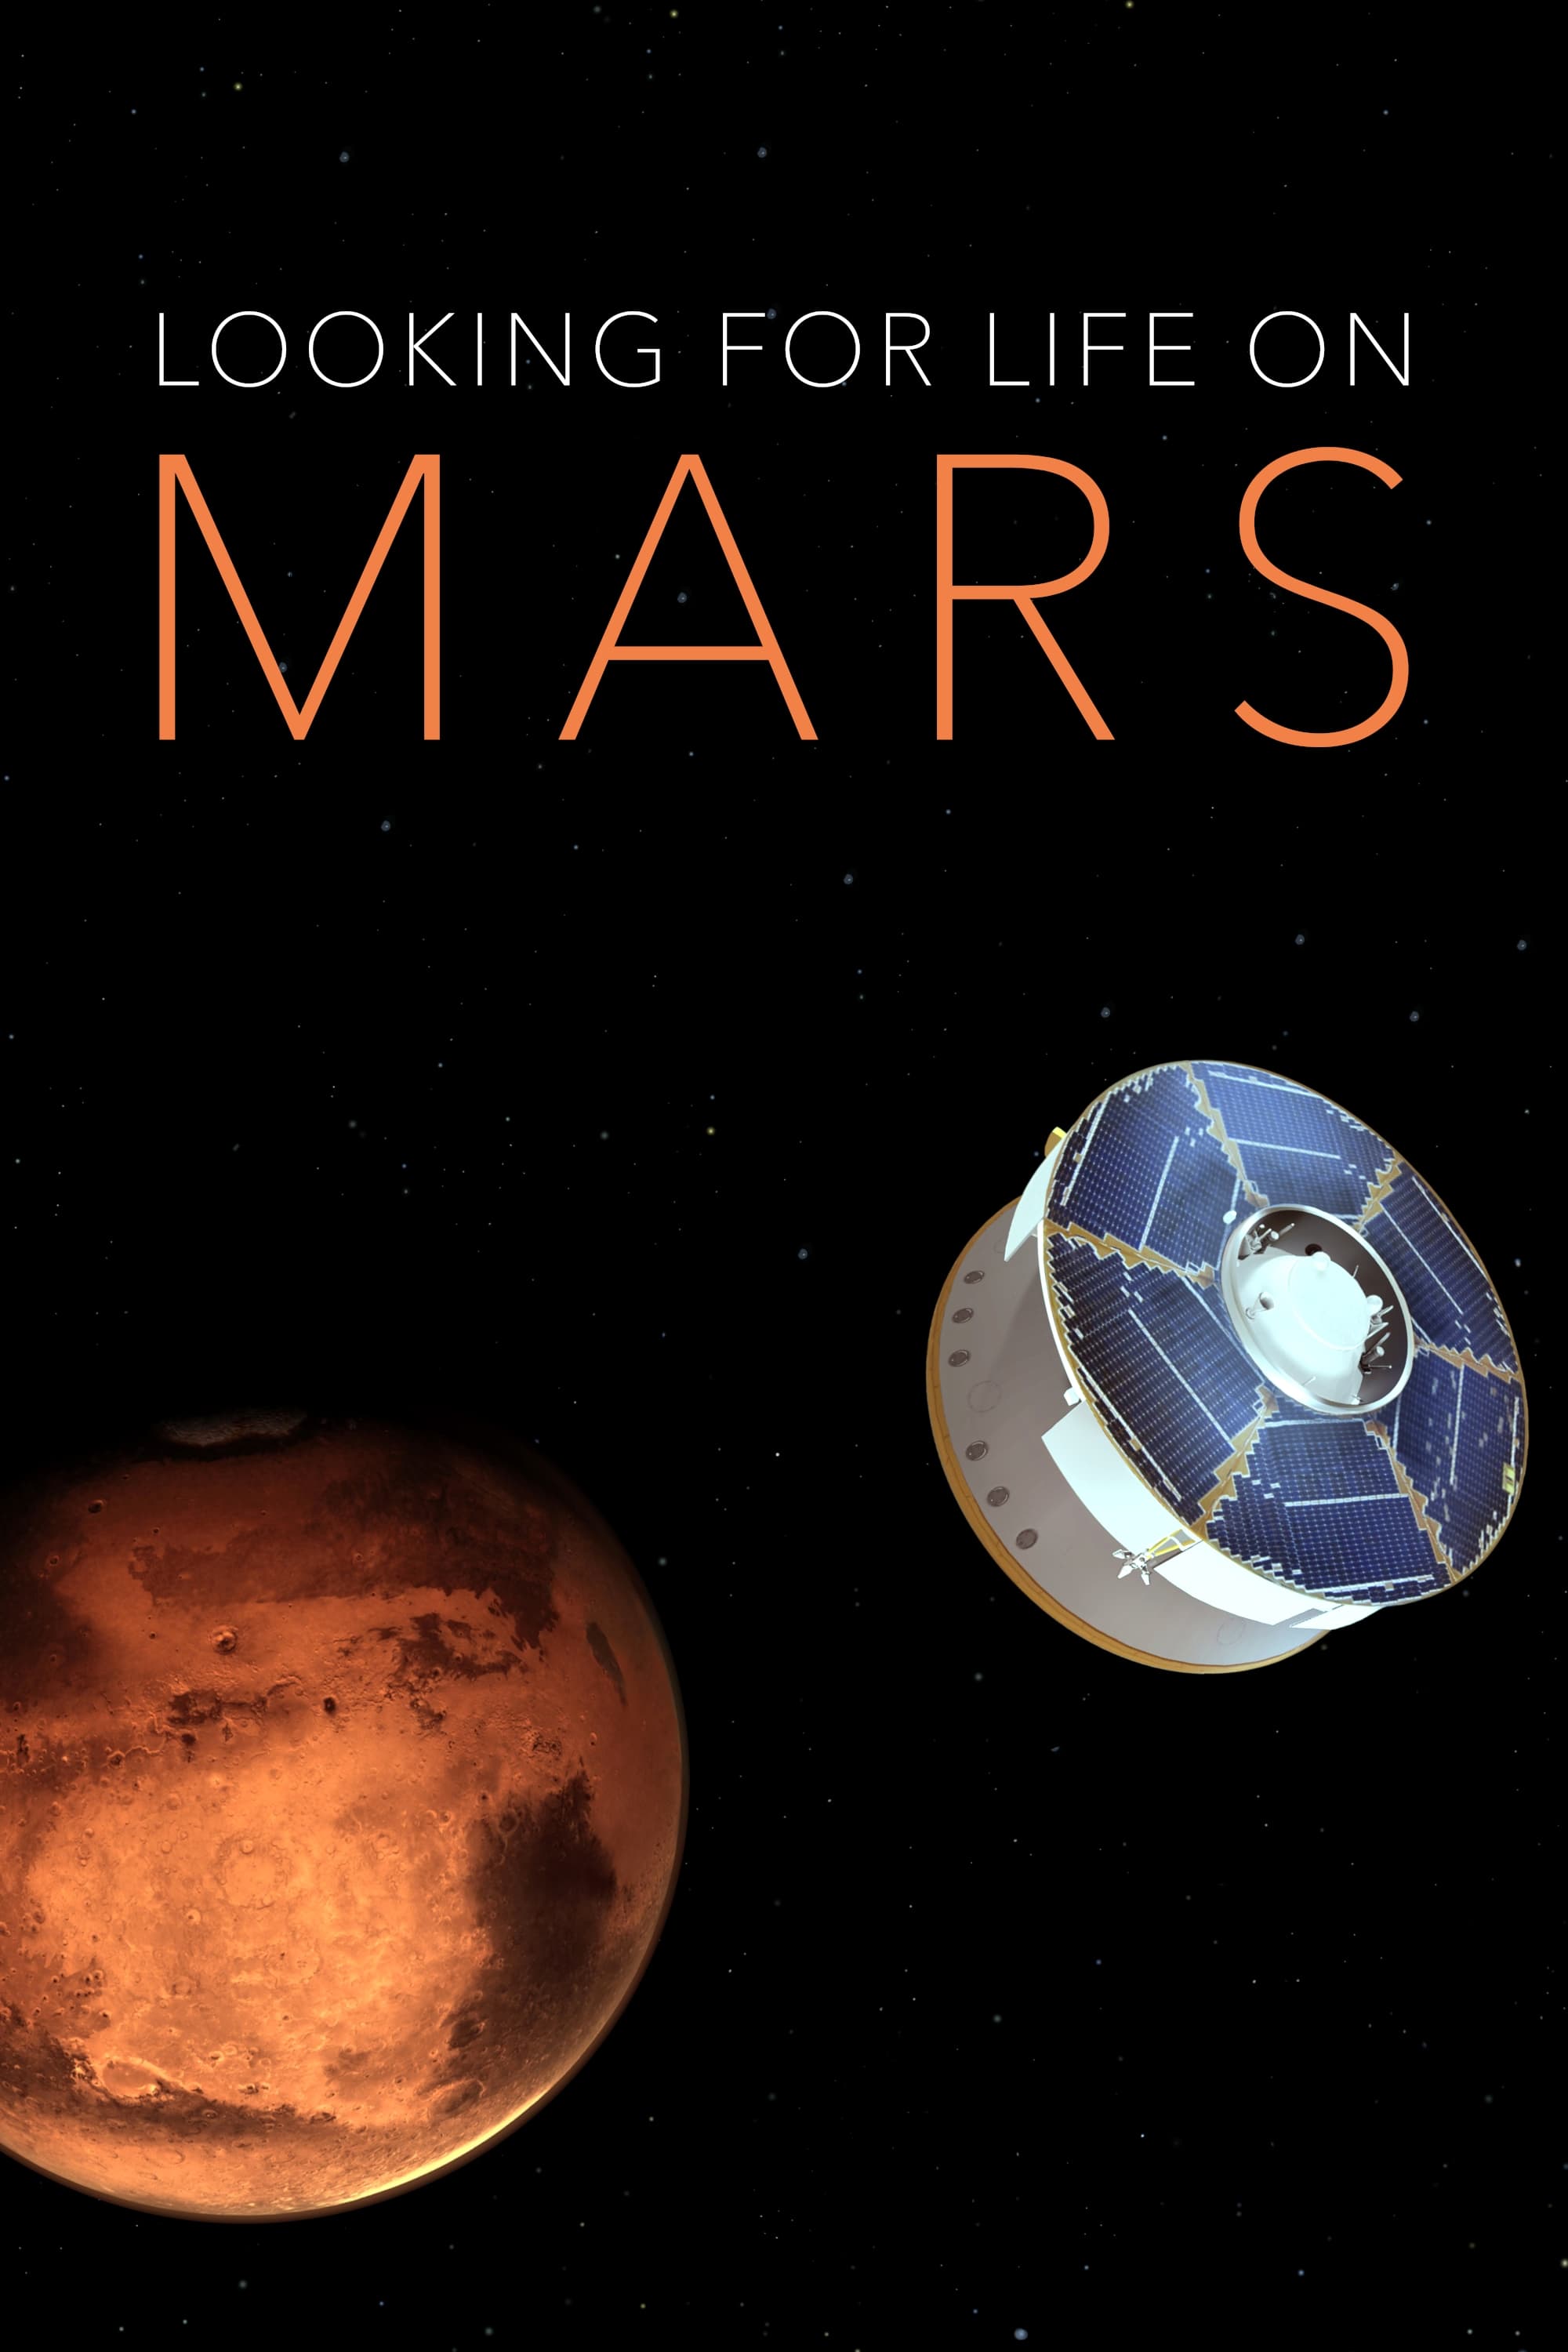 Mars - Leben auf dem Roten Planeten? (2021)